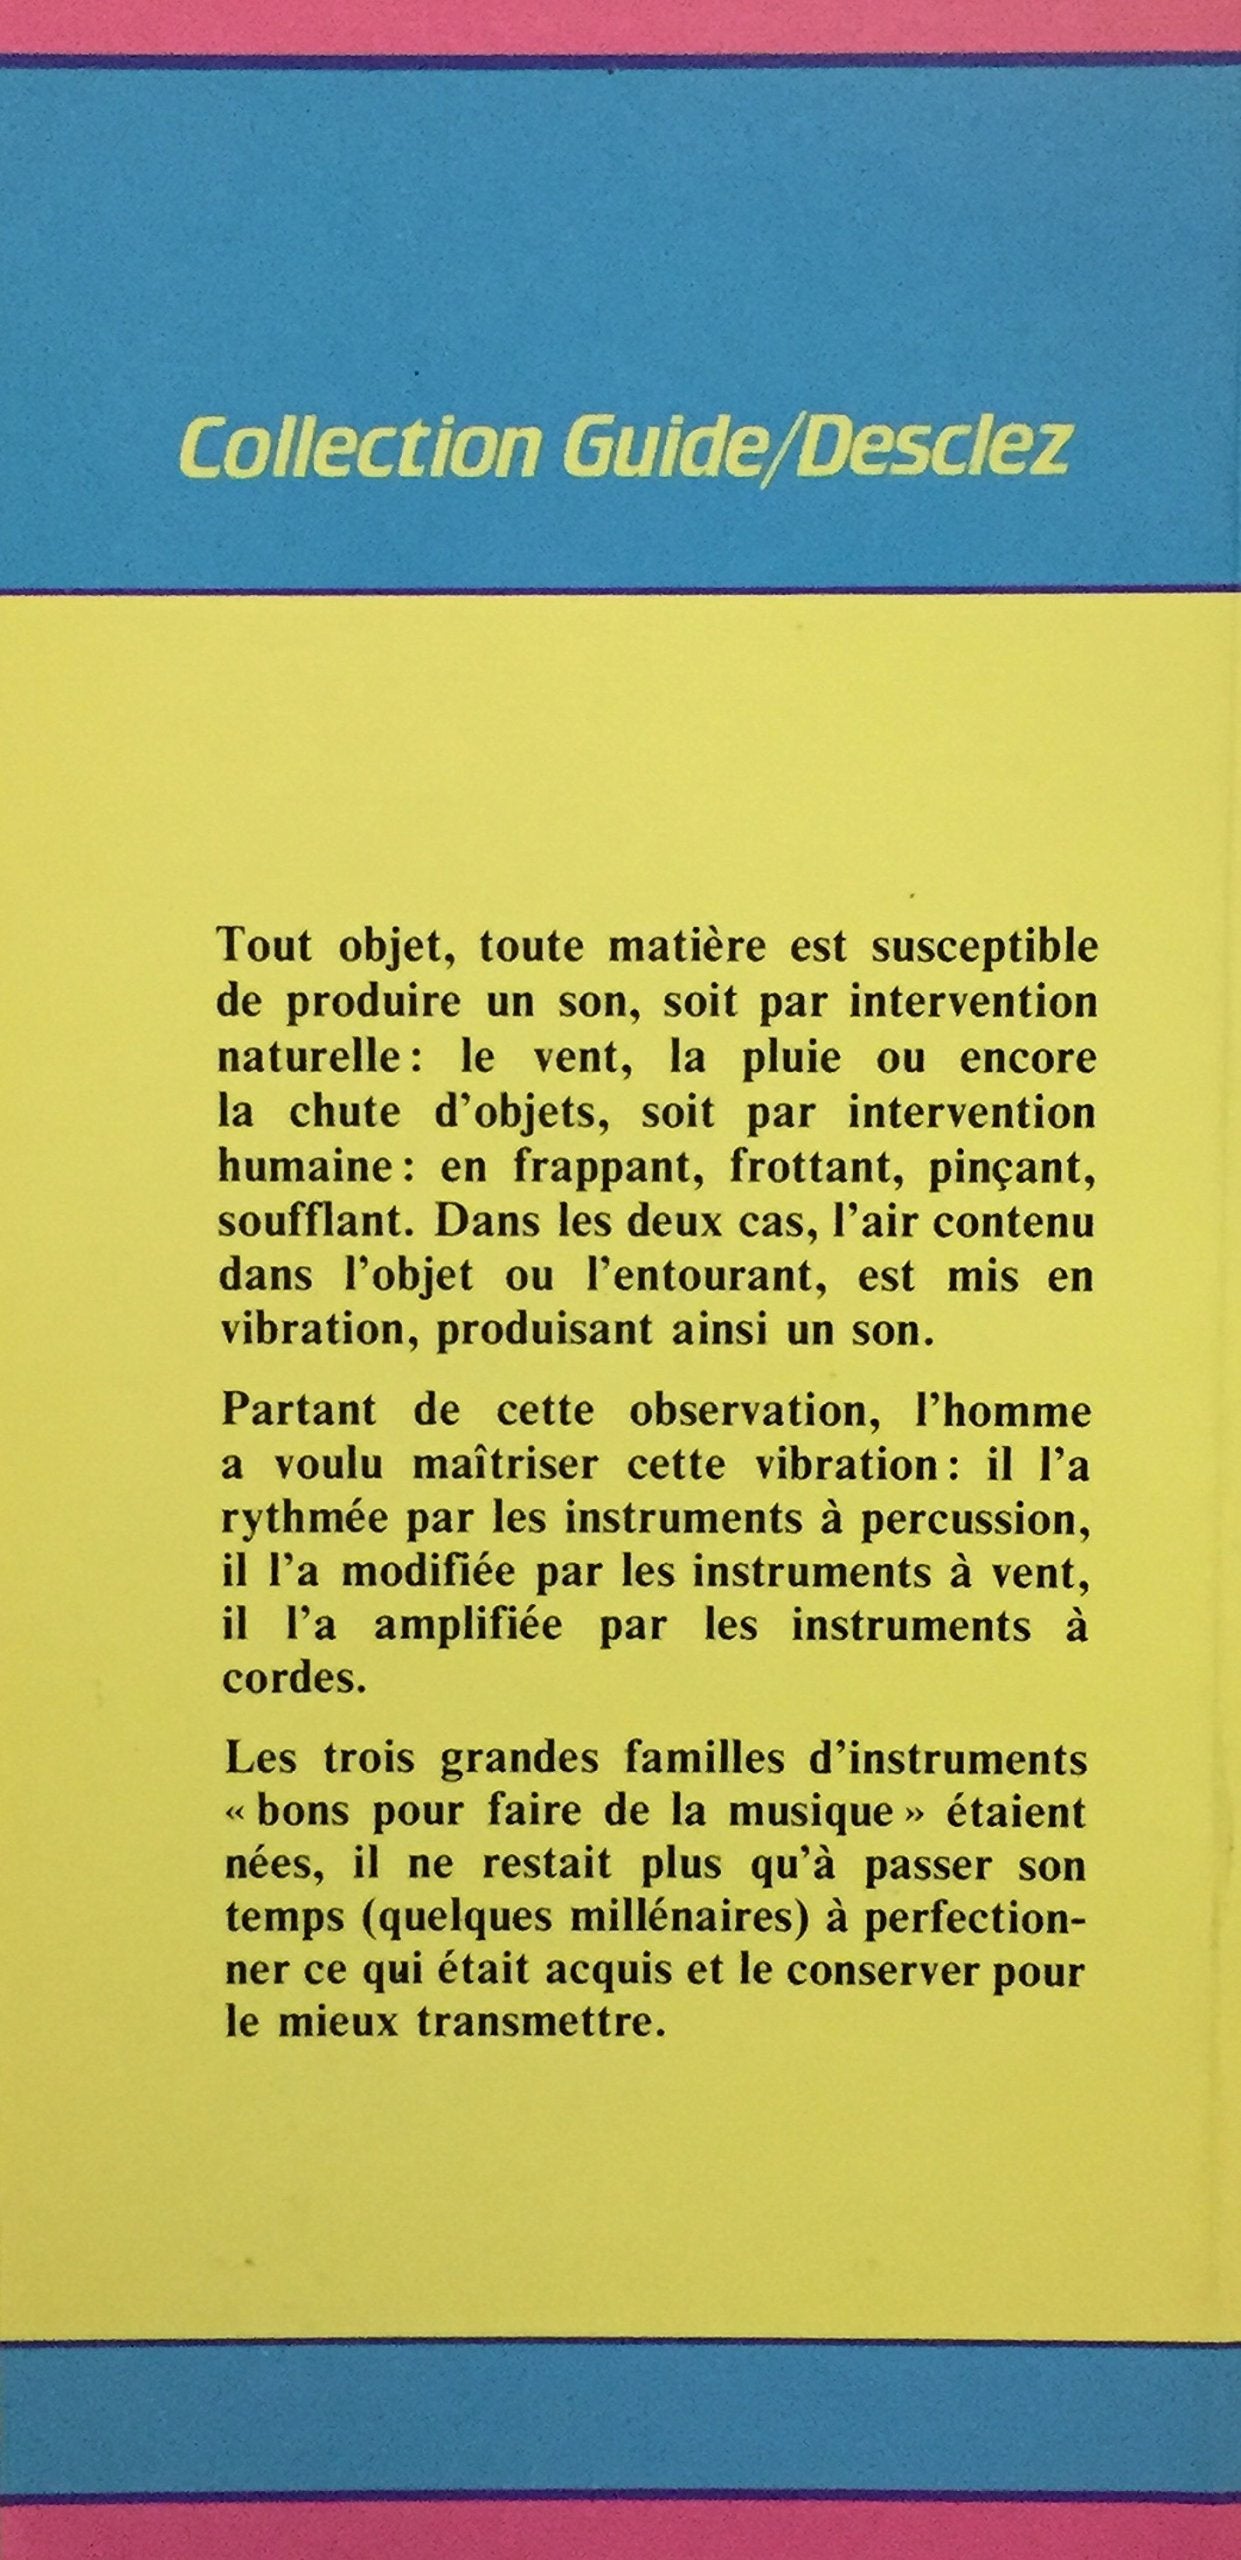 Dictionnaire et origines des instruments de musique (Pierre-andré Sablé)